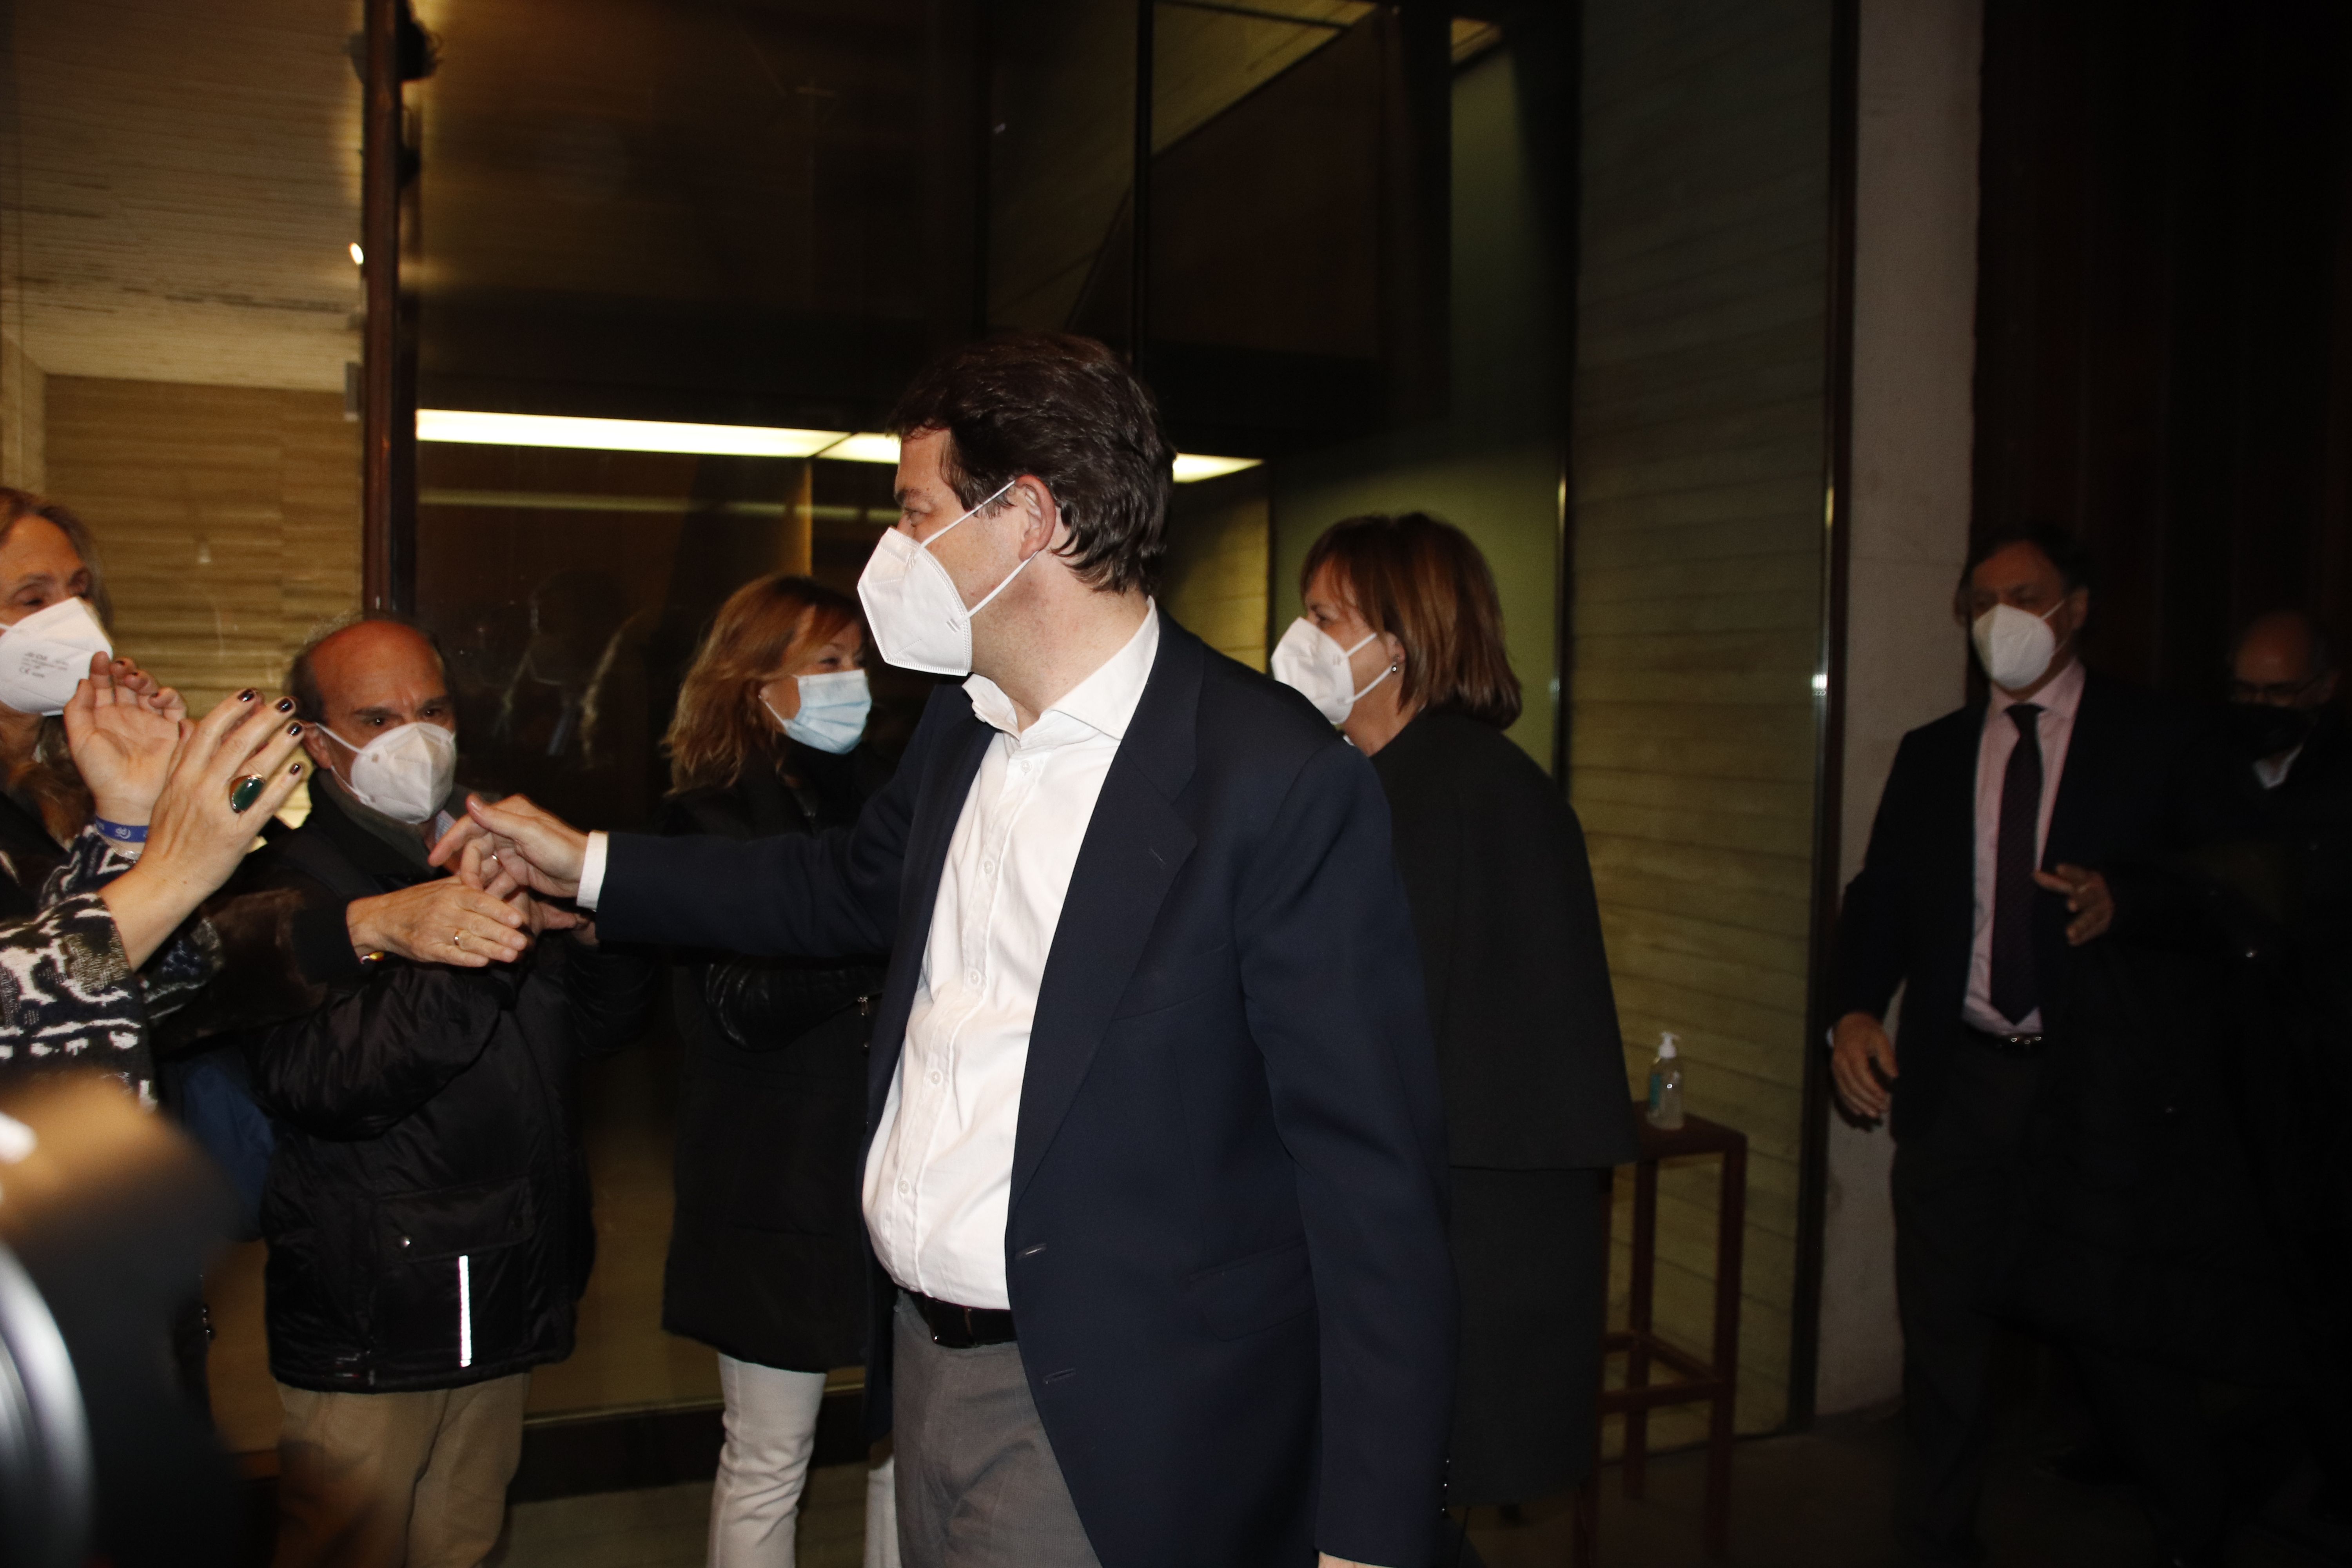 Alfonso Fernández Mañueco, clausura un acto de cierre de la campaña electoral en Salamanca | Fotos: Andrea M